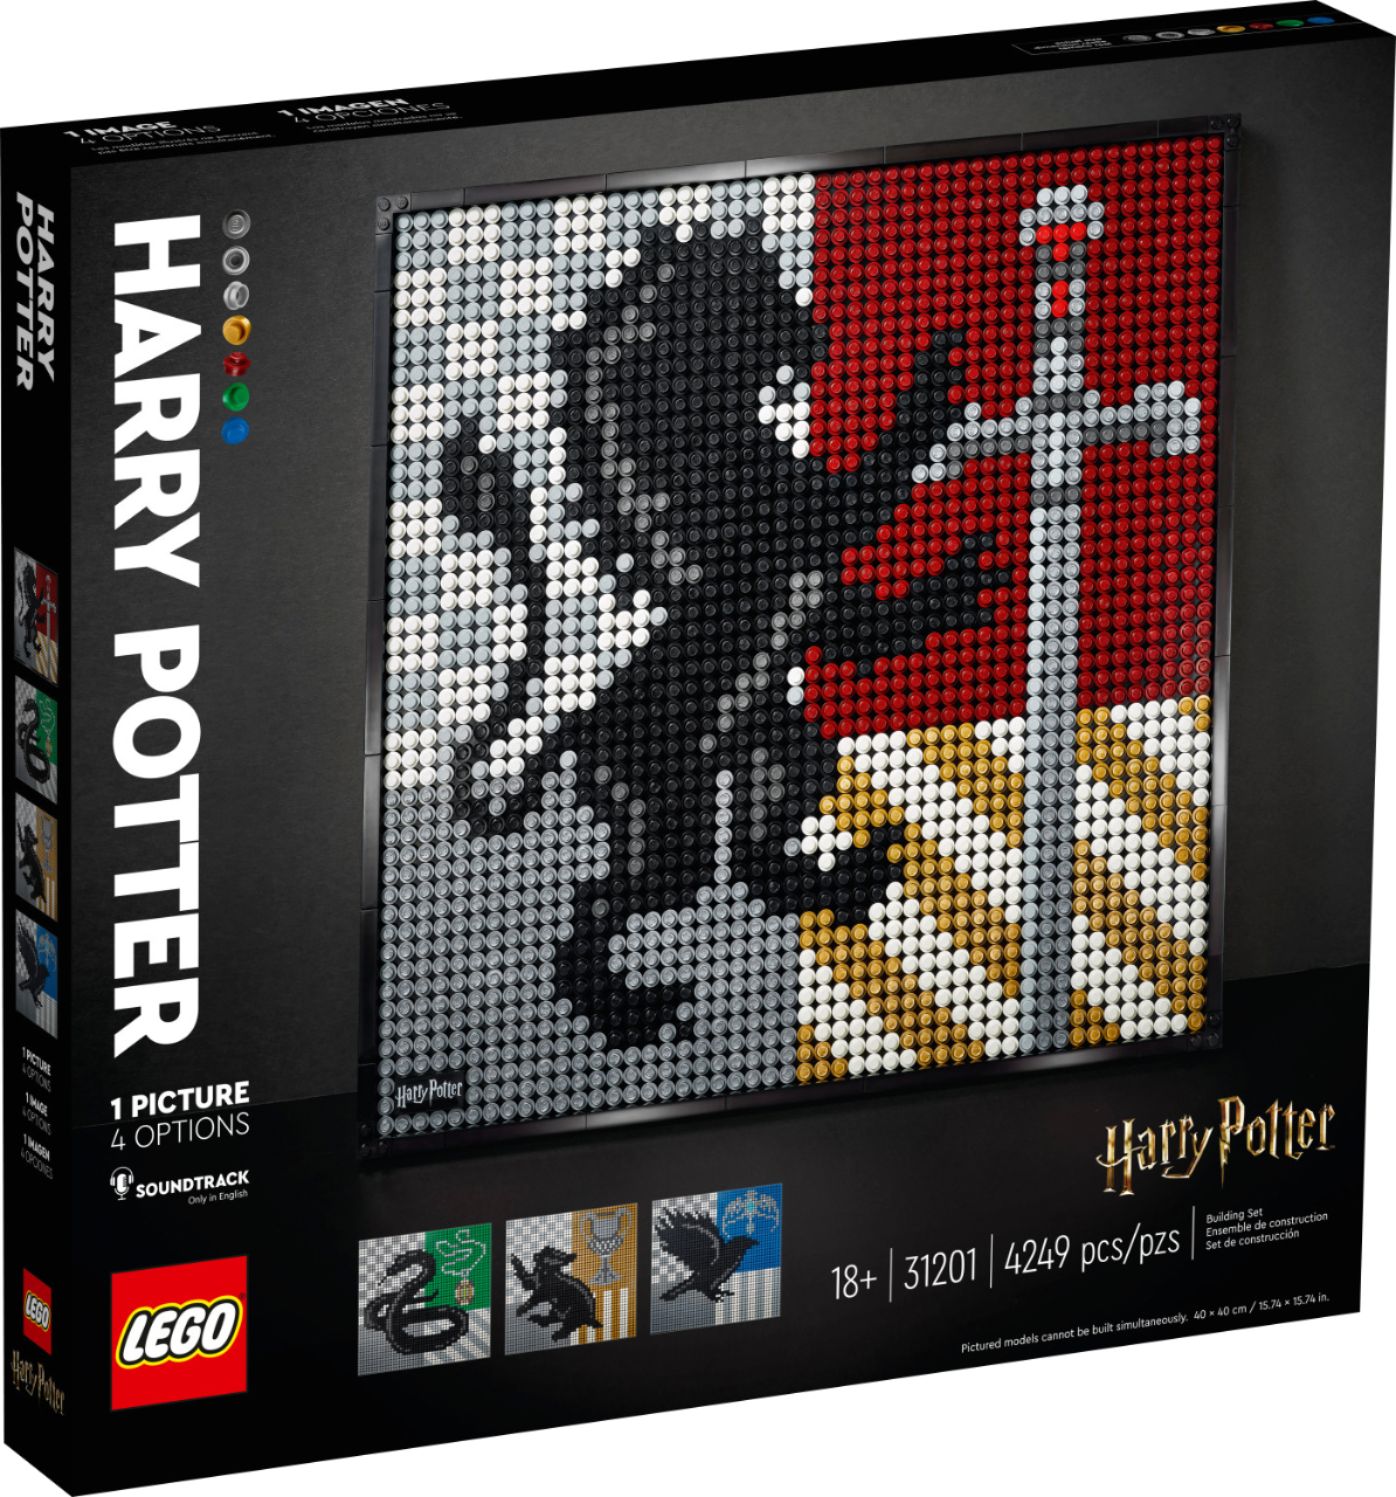 Left View: LEGO - ART Harry Potter Hogwarts Crests 31201